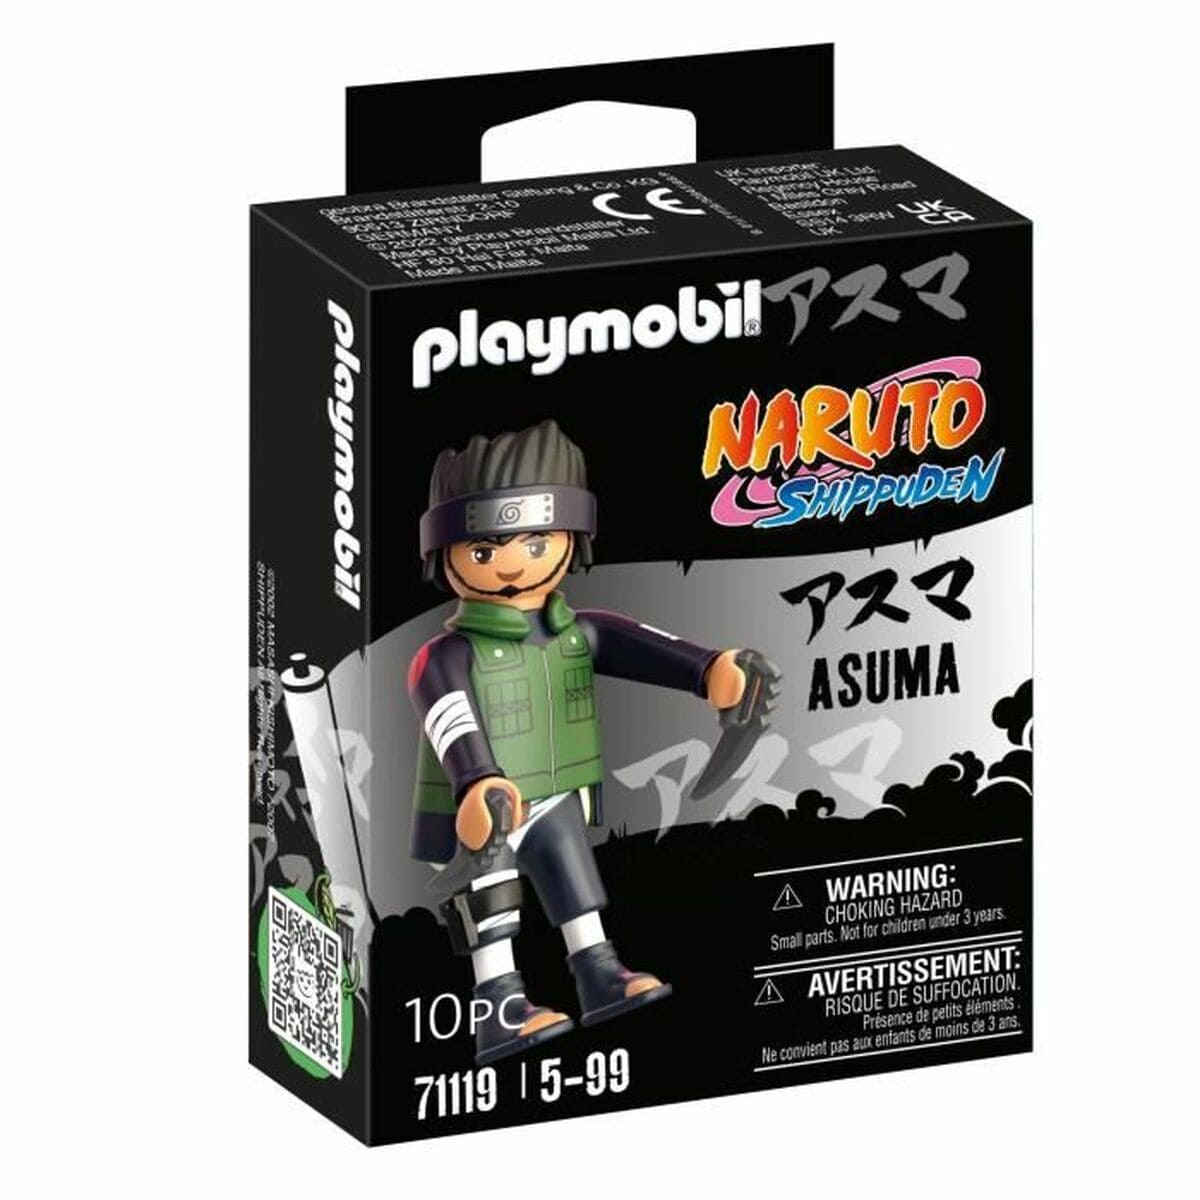 Playmobil Spielzeug | Kostüme > Spielzeug und Spiele > Action-Figuren Figur Playmobil Naruto Shippuden - Asuma 71119 10 Stücke